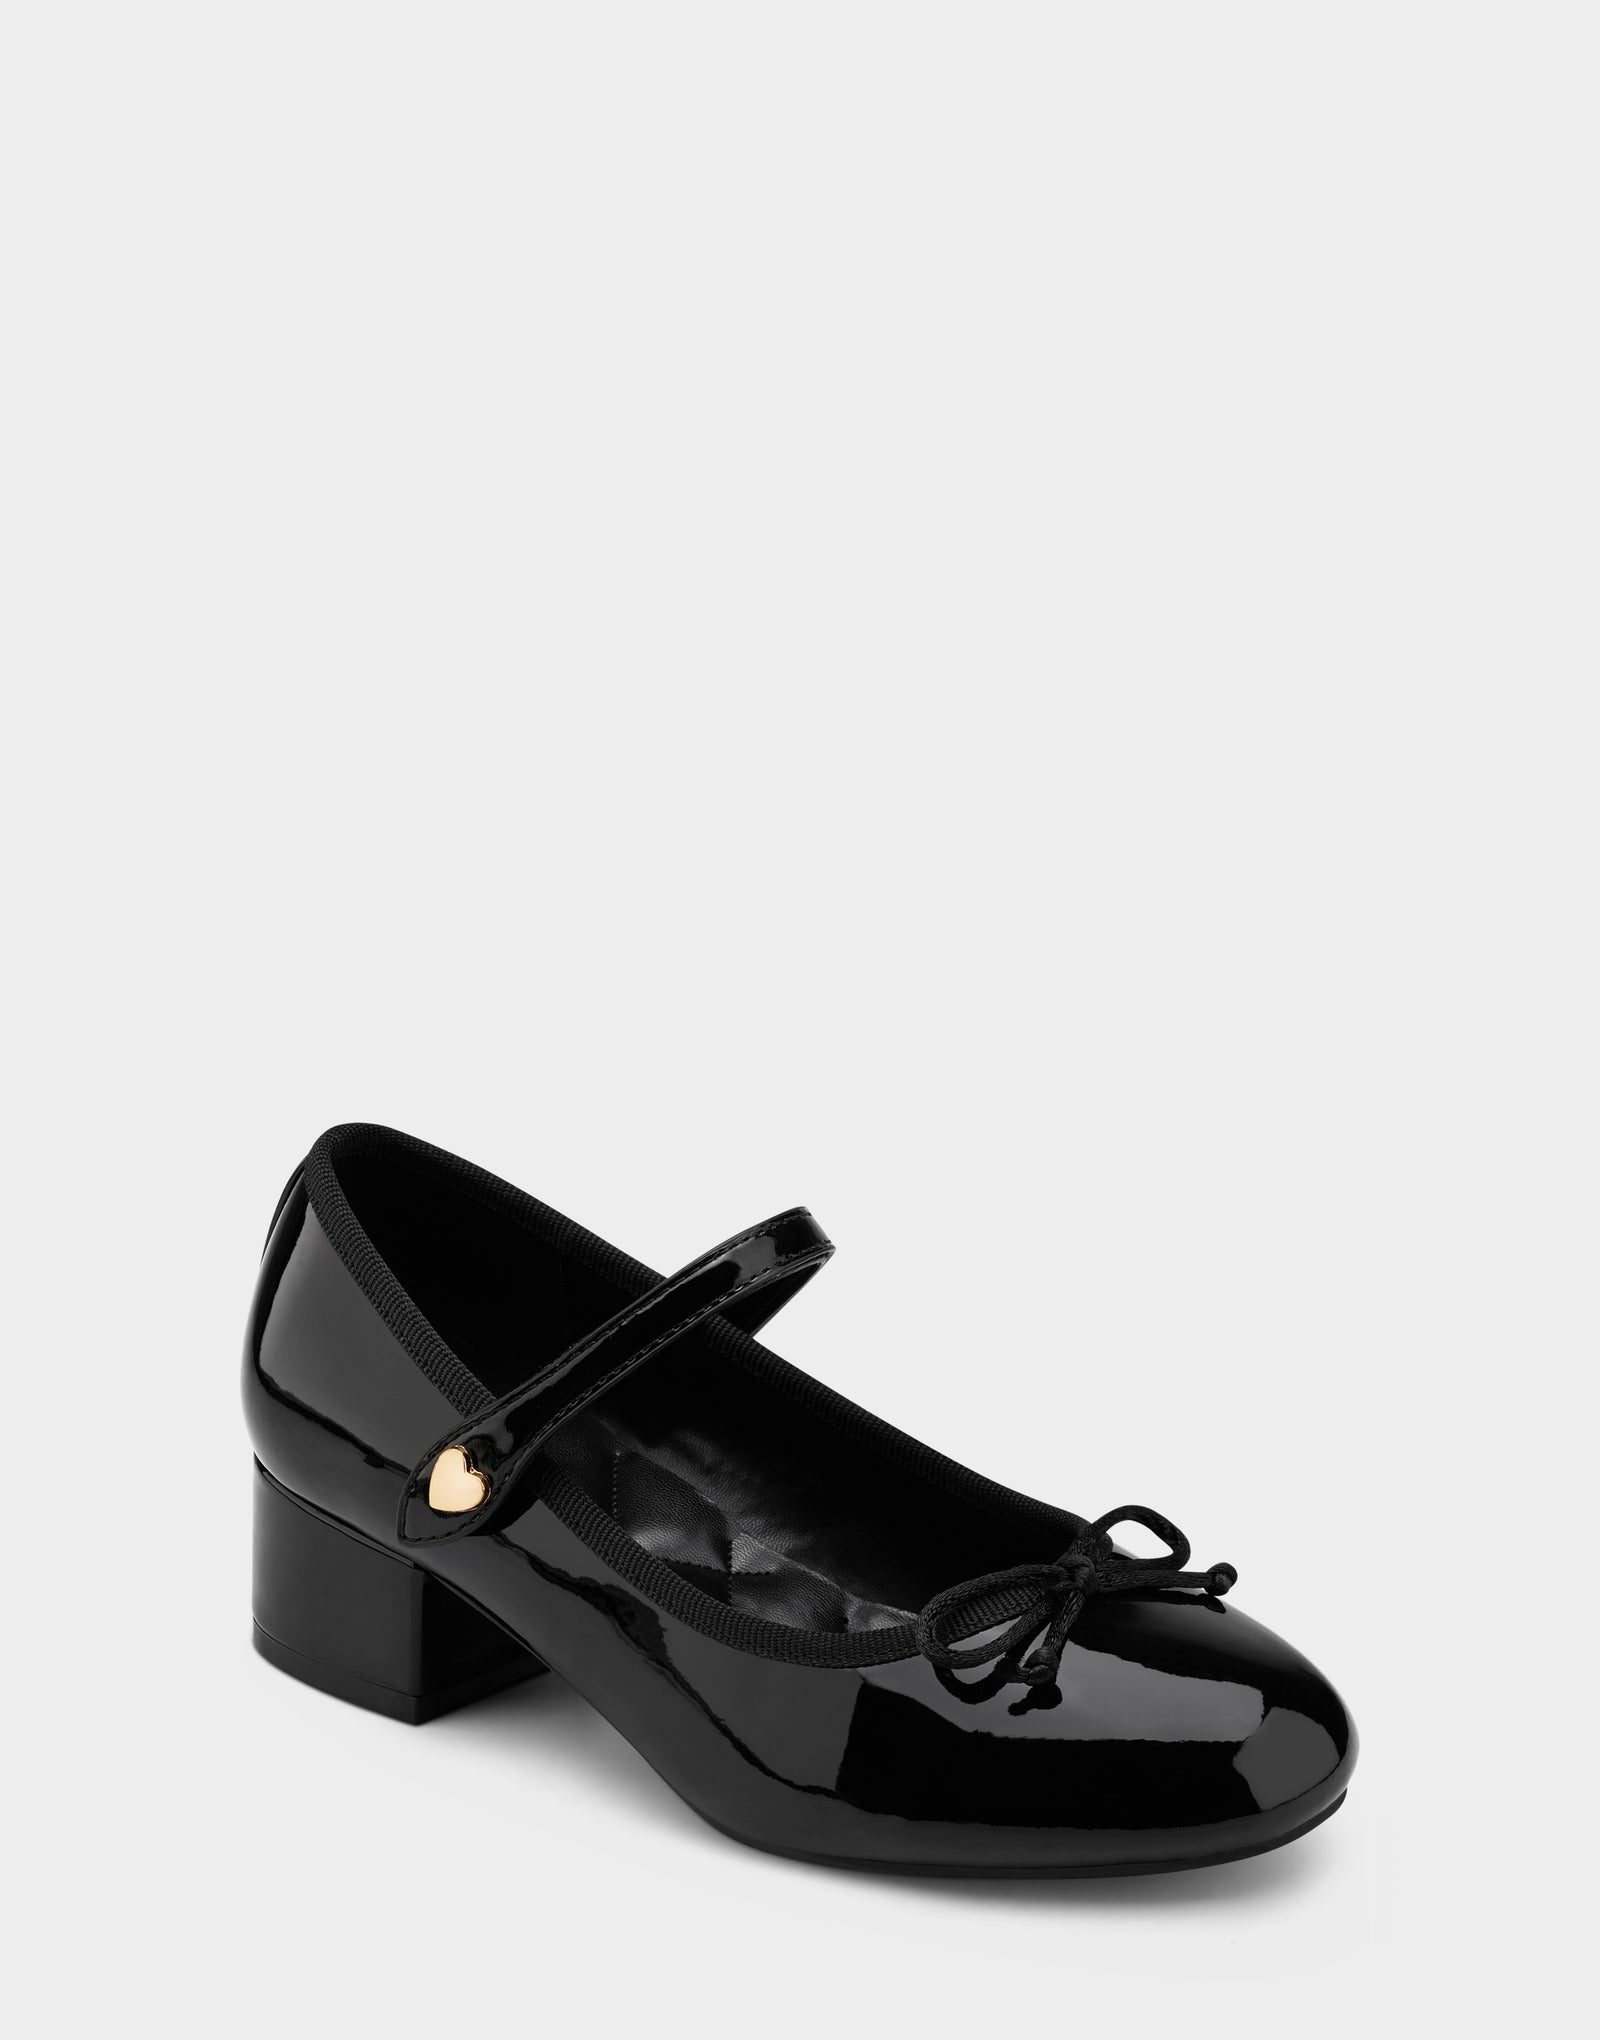 Girls Shoe in Black